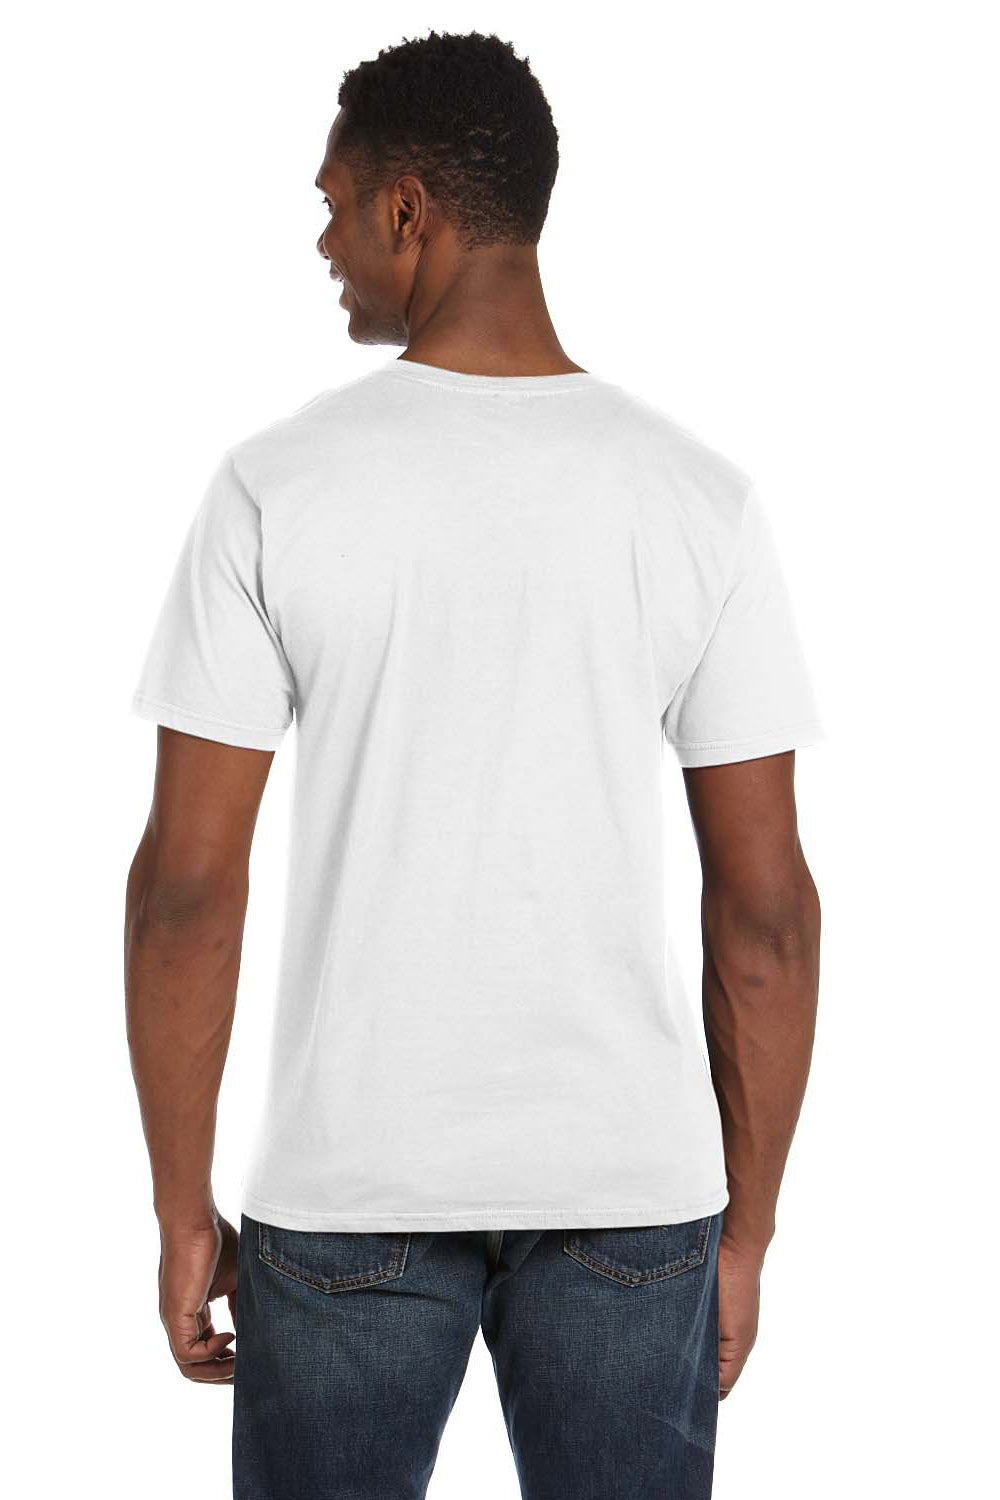 Anvil 982 Mens Short Sleeve V-Neck T-Shirt White Back